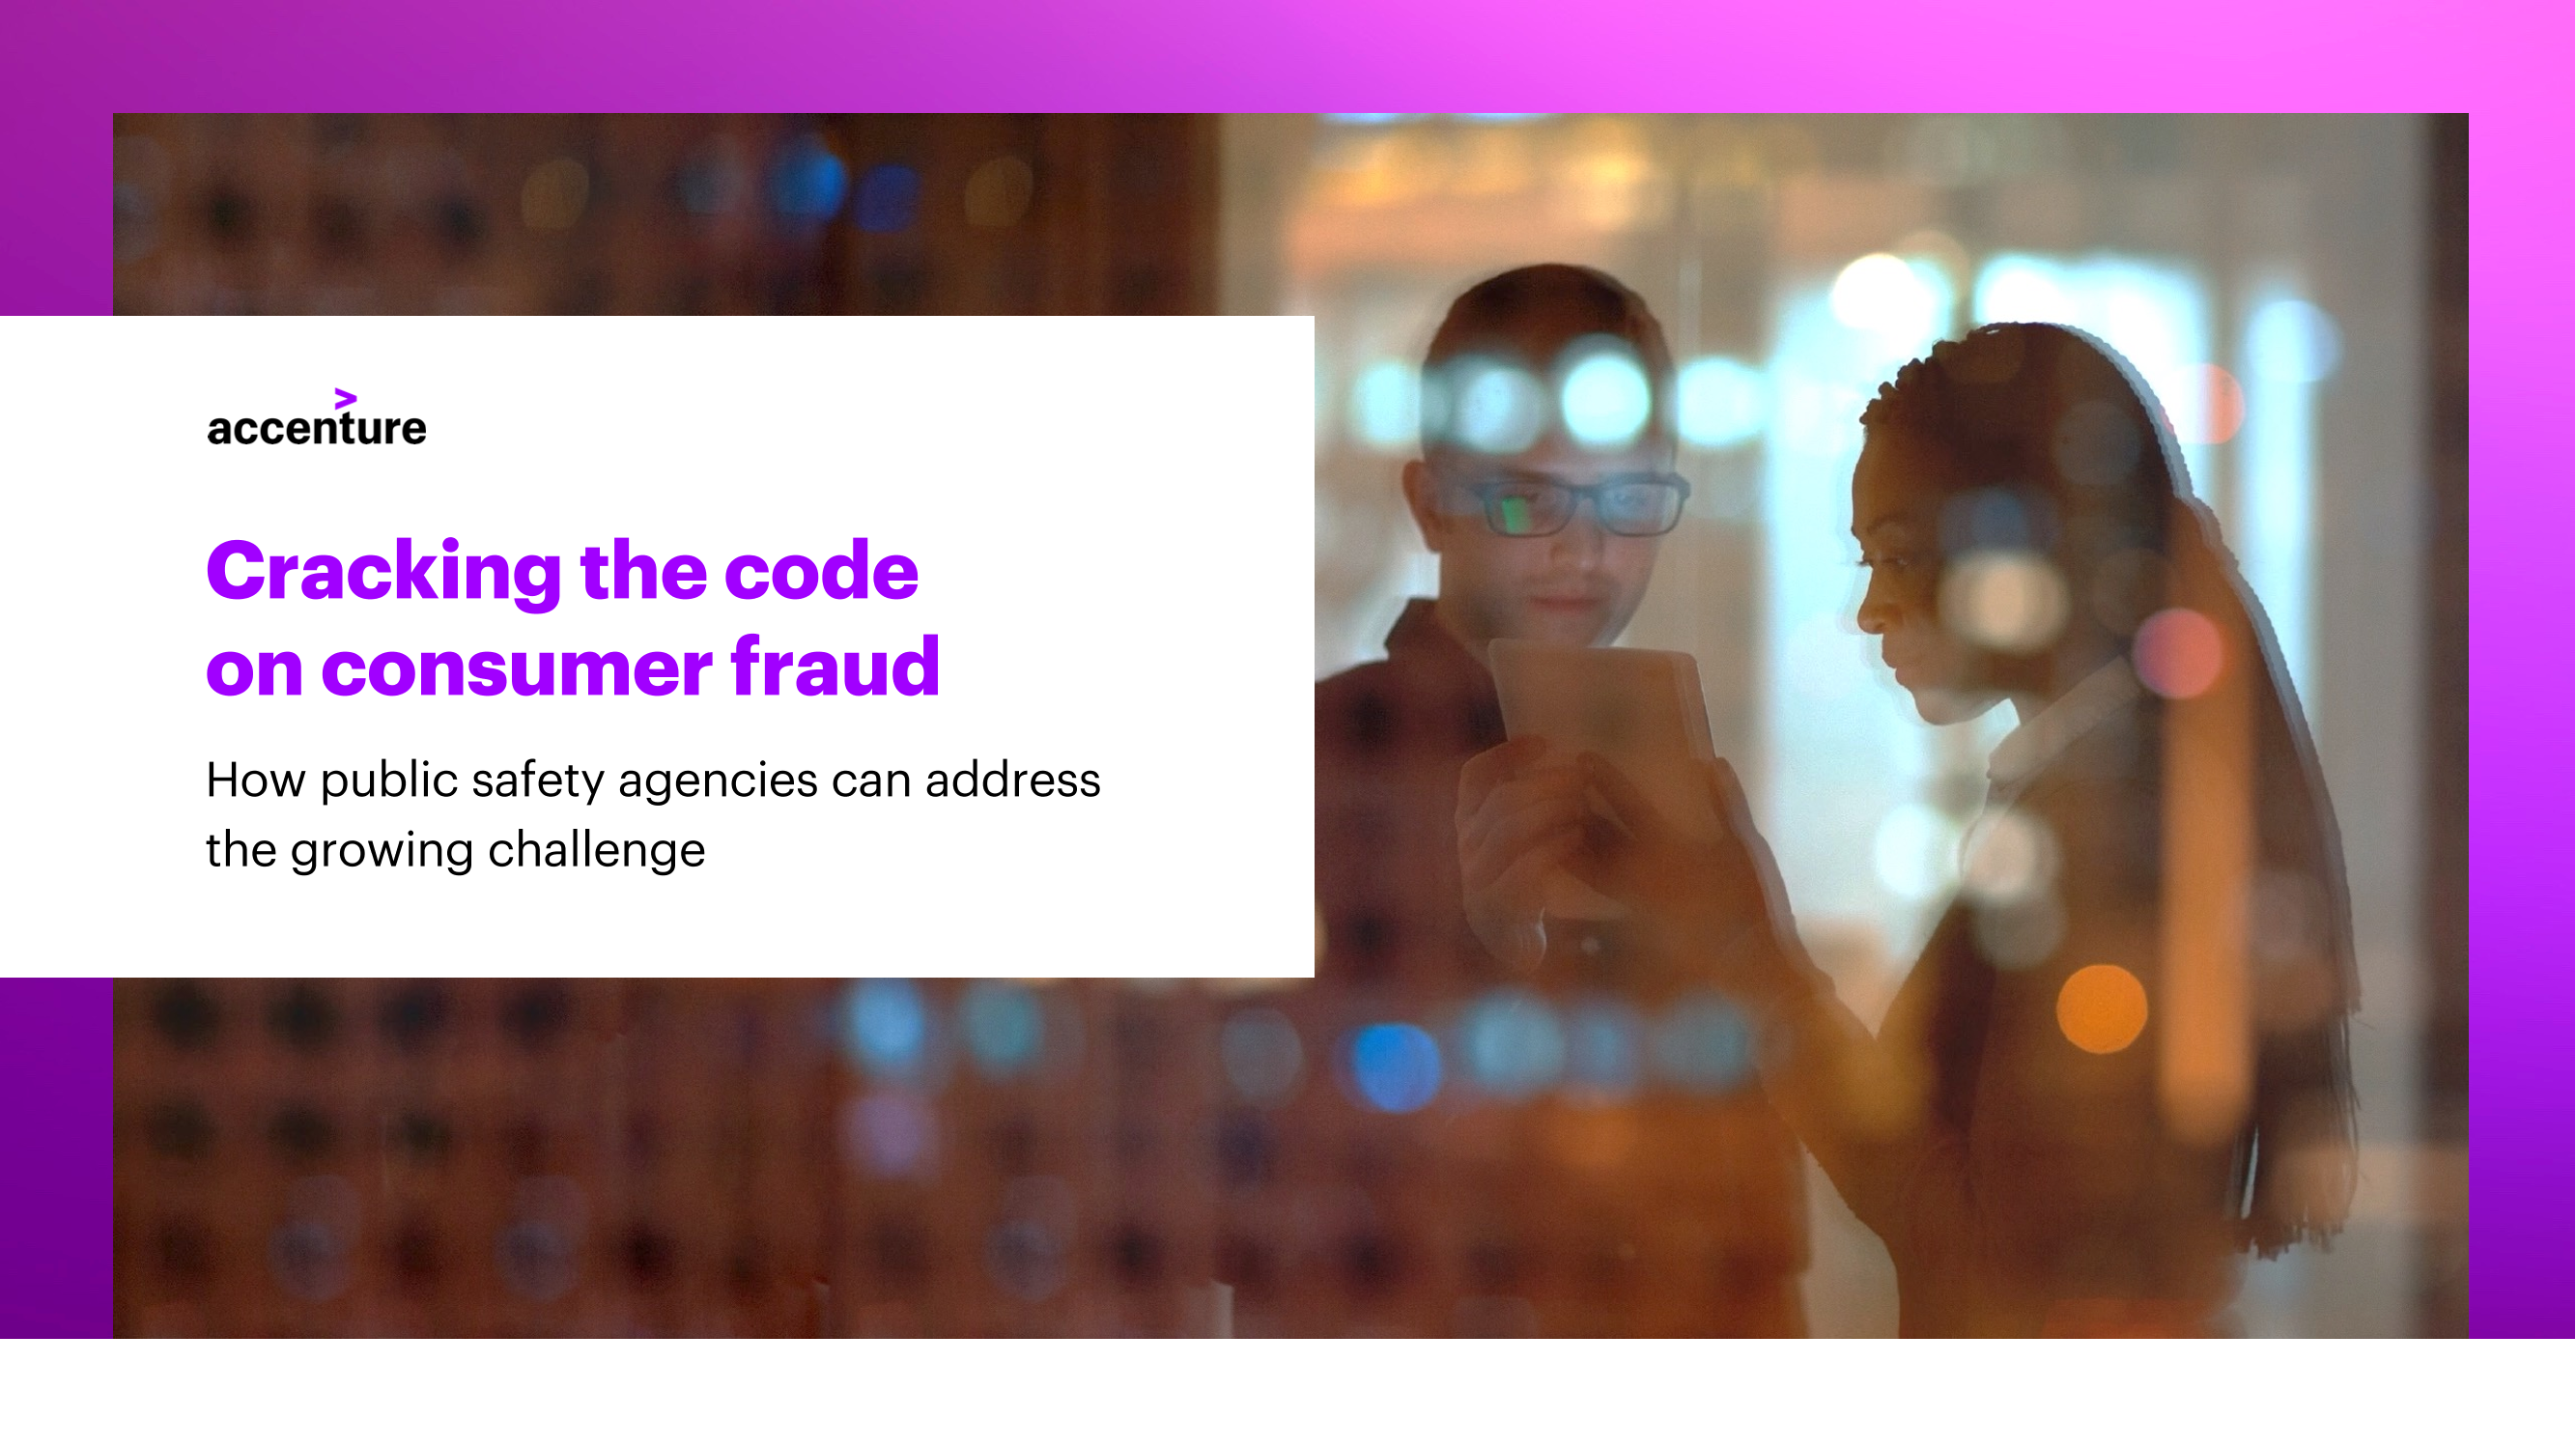 破解消费者欺诈的密码（英)-38页破解消费者欺诈的密码（英)-38页_1.png